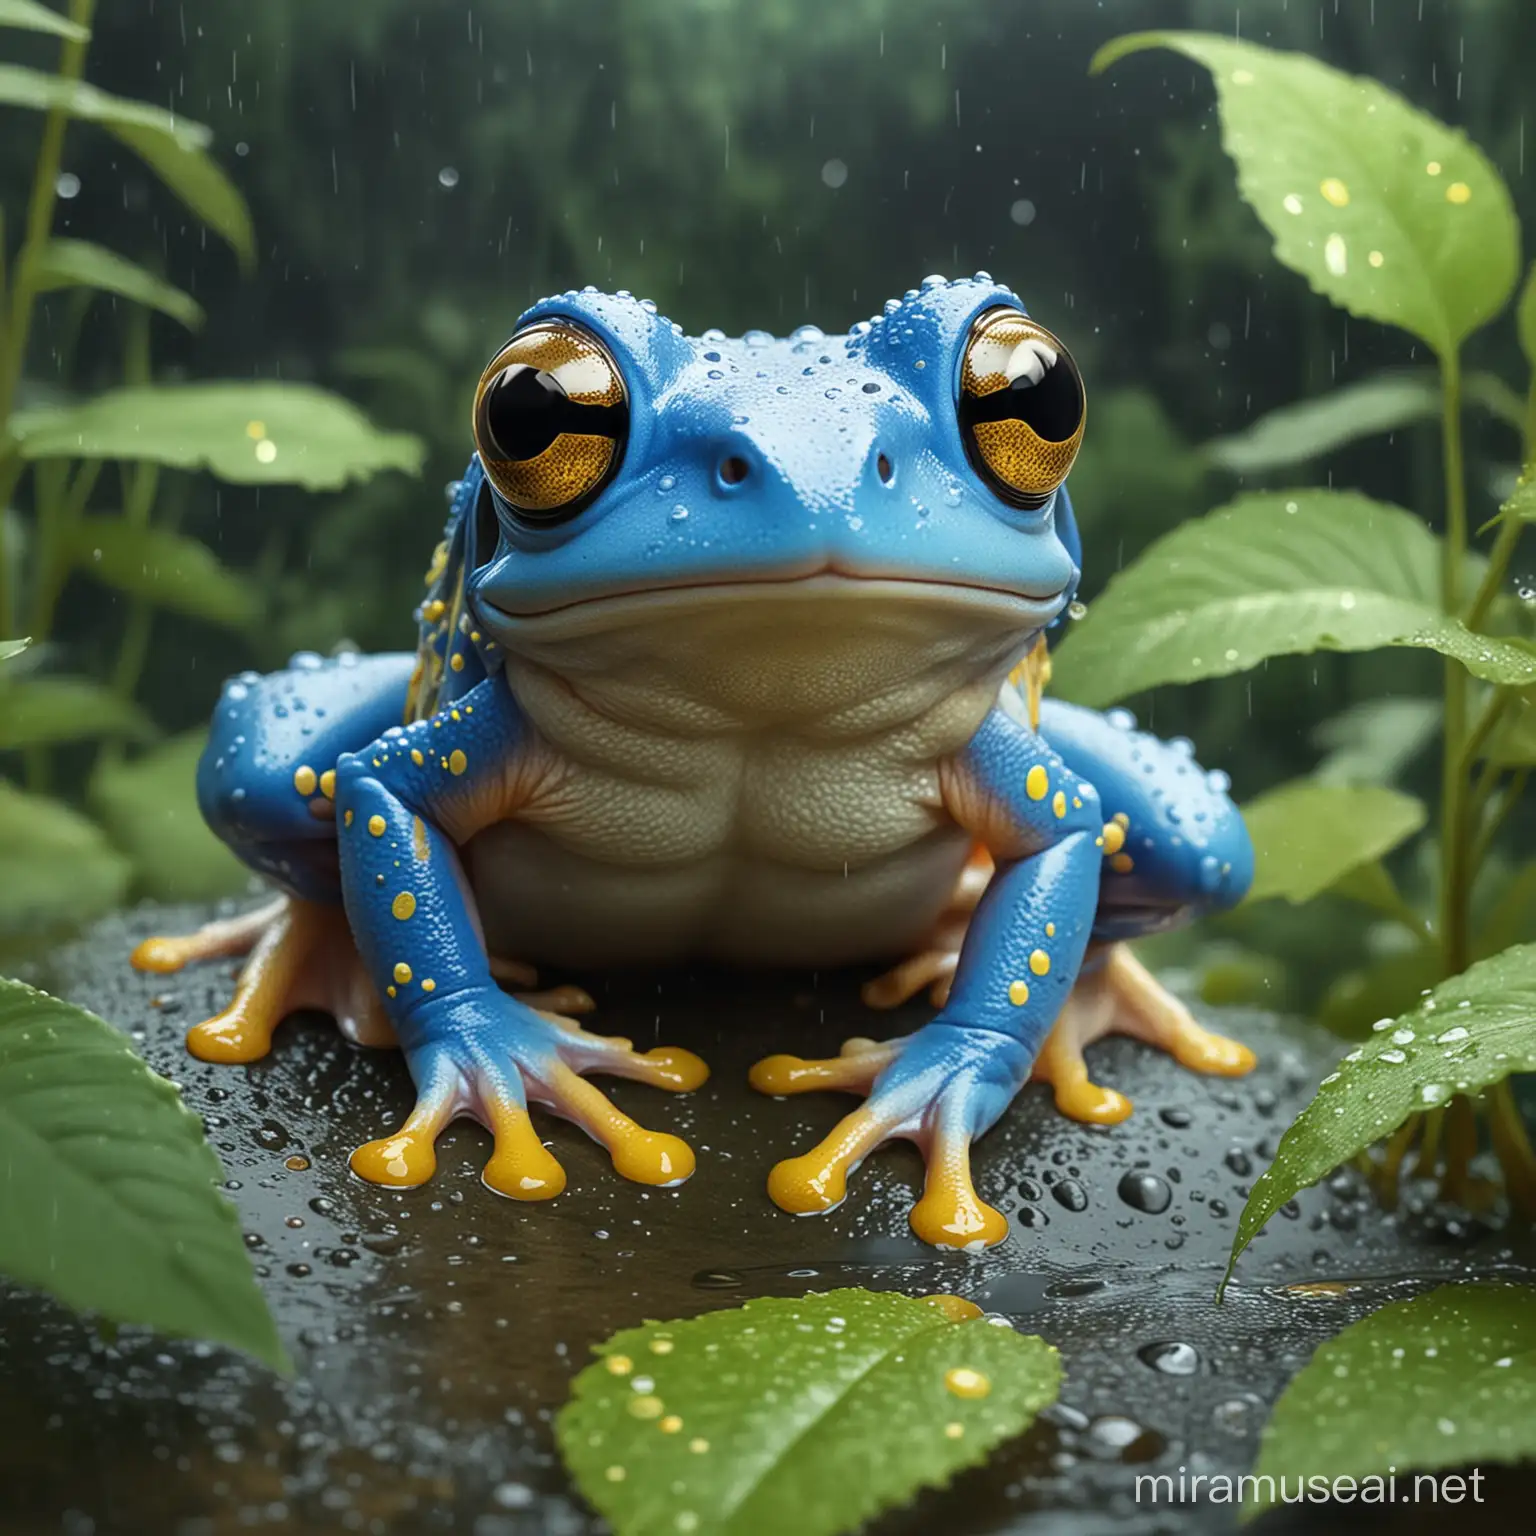 Kawaii stil, Illustration: 
Japanischer Laubfrosch 
Ein kleiner, blauer Frosch mit gelben flecken mit goldfarbenen Augen, der in feuchten Wäldern und Sümpfen lebt. .illustration, kawaii stil